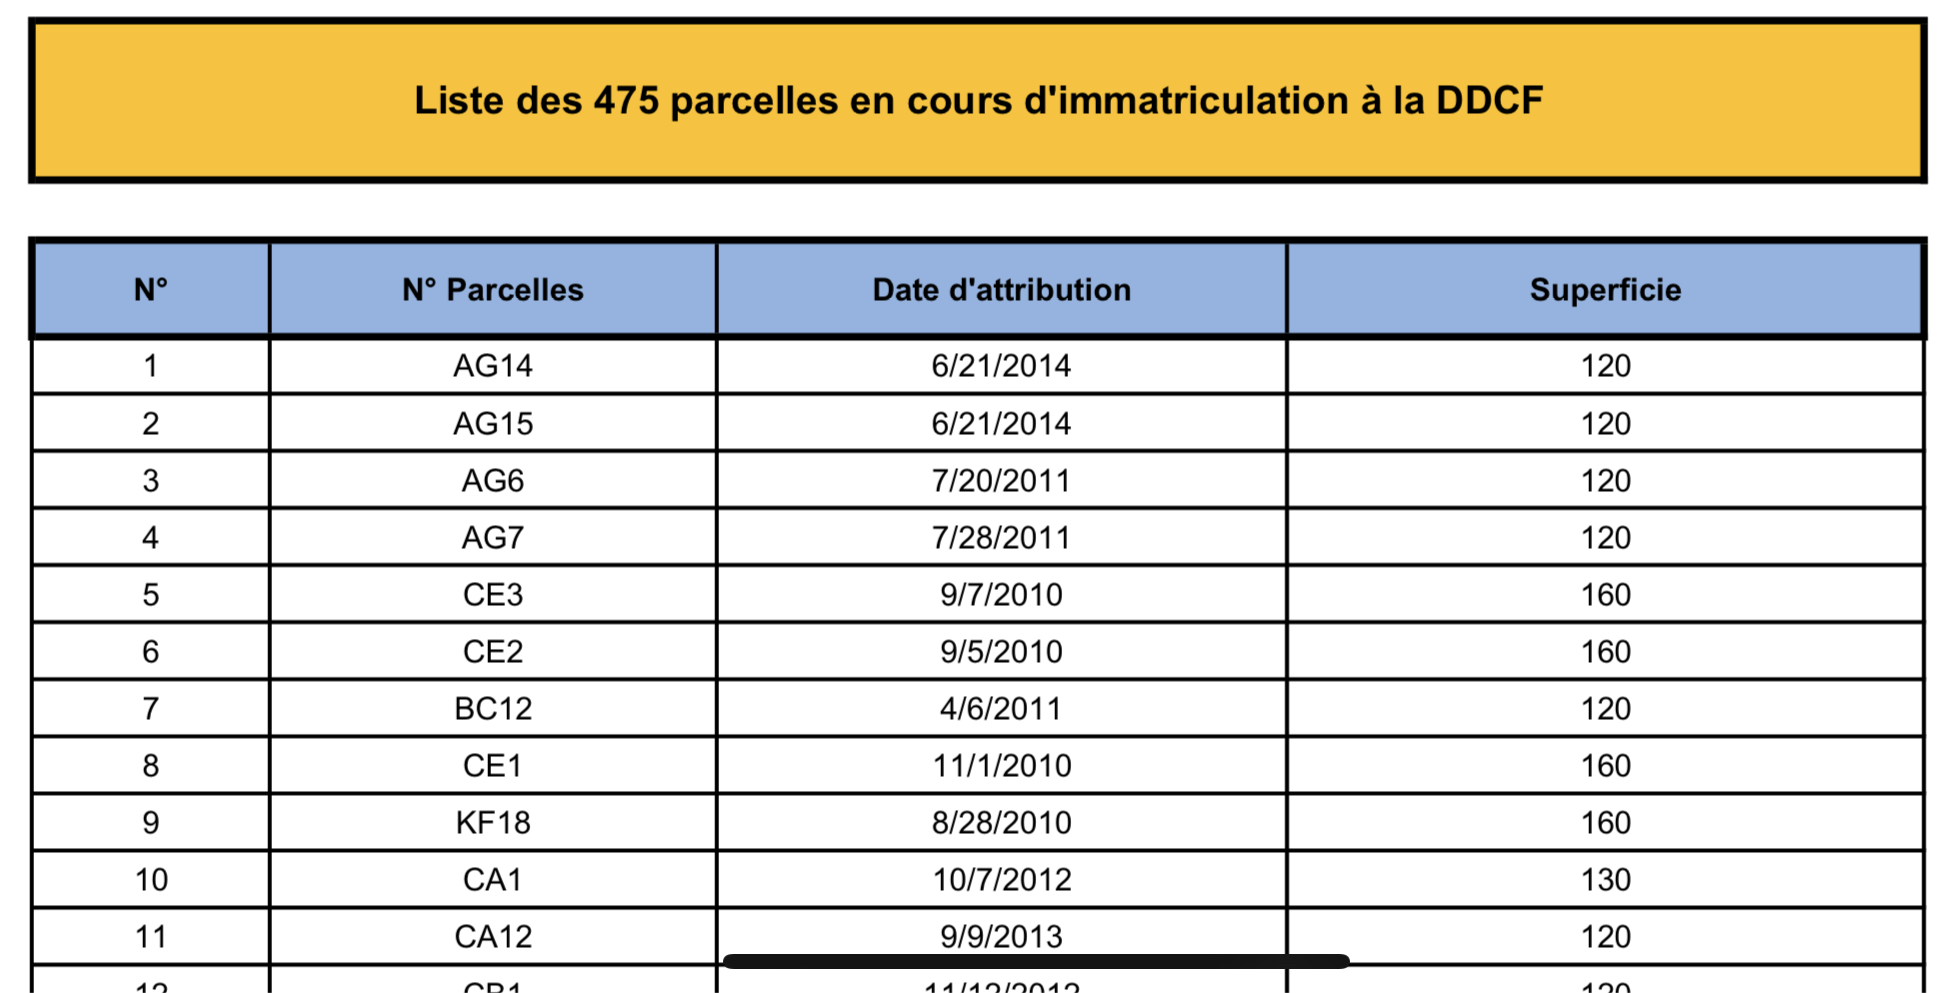 Liste des 475 parcelles en cours d'immatriculation à la DDCF